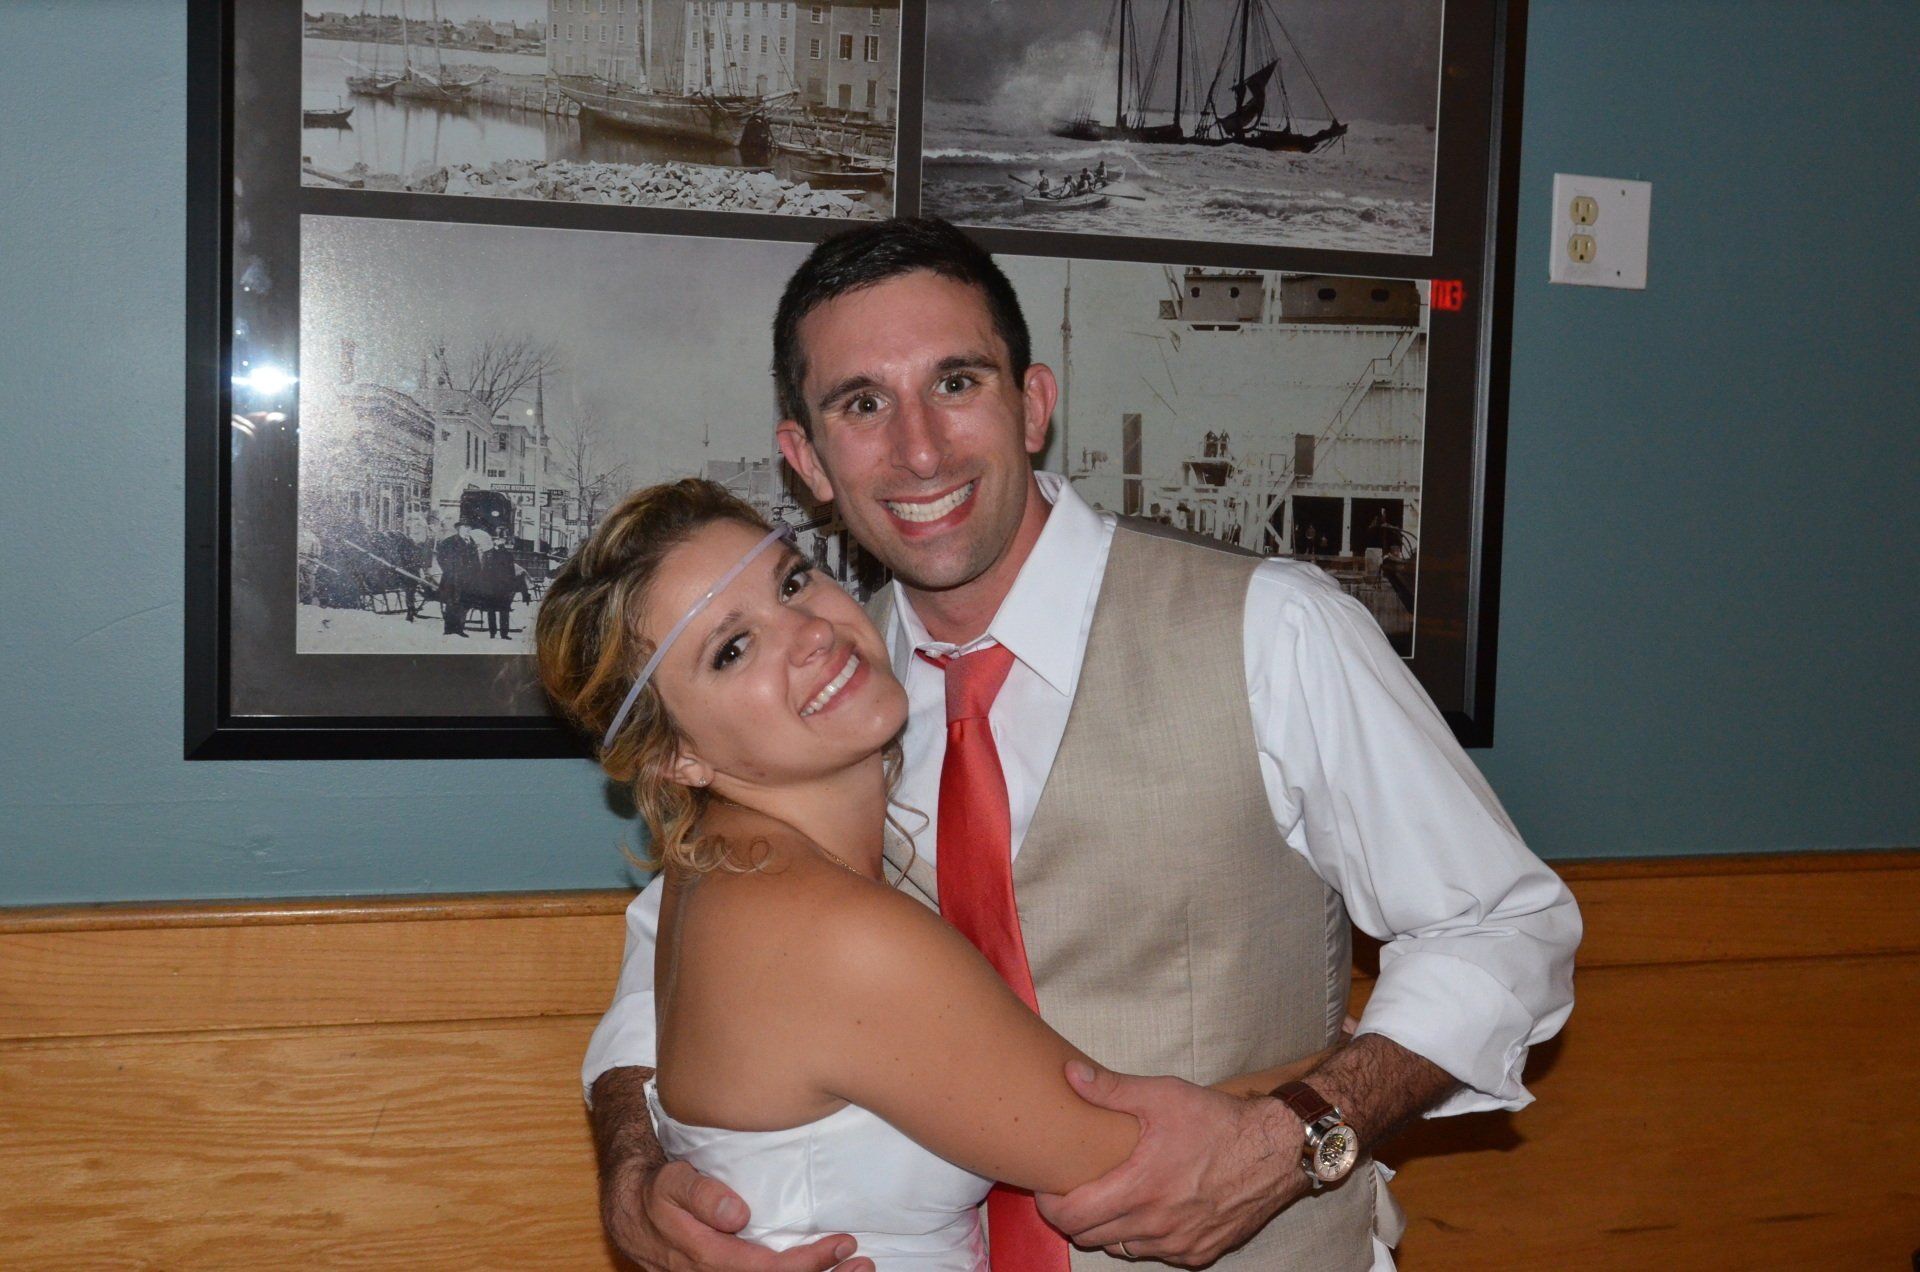 wedding DJ bride and groom at Michael's Harborside Restaurant, Newburyport, Massachusetts